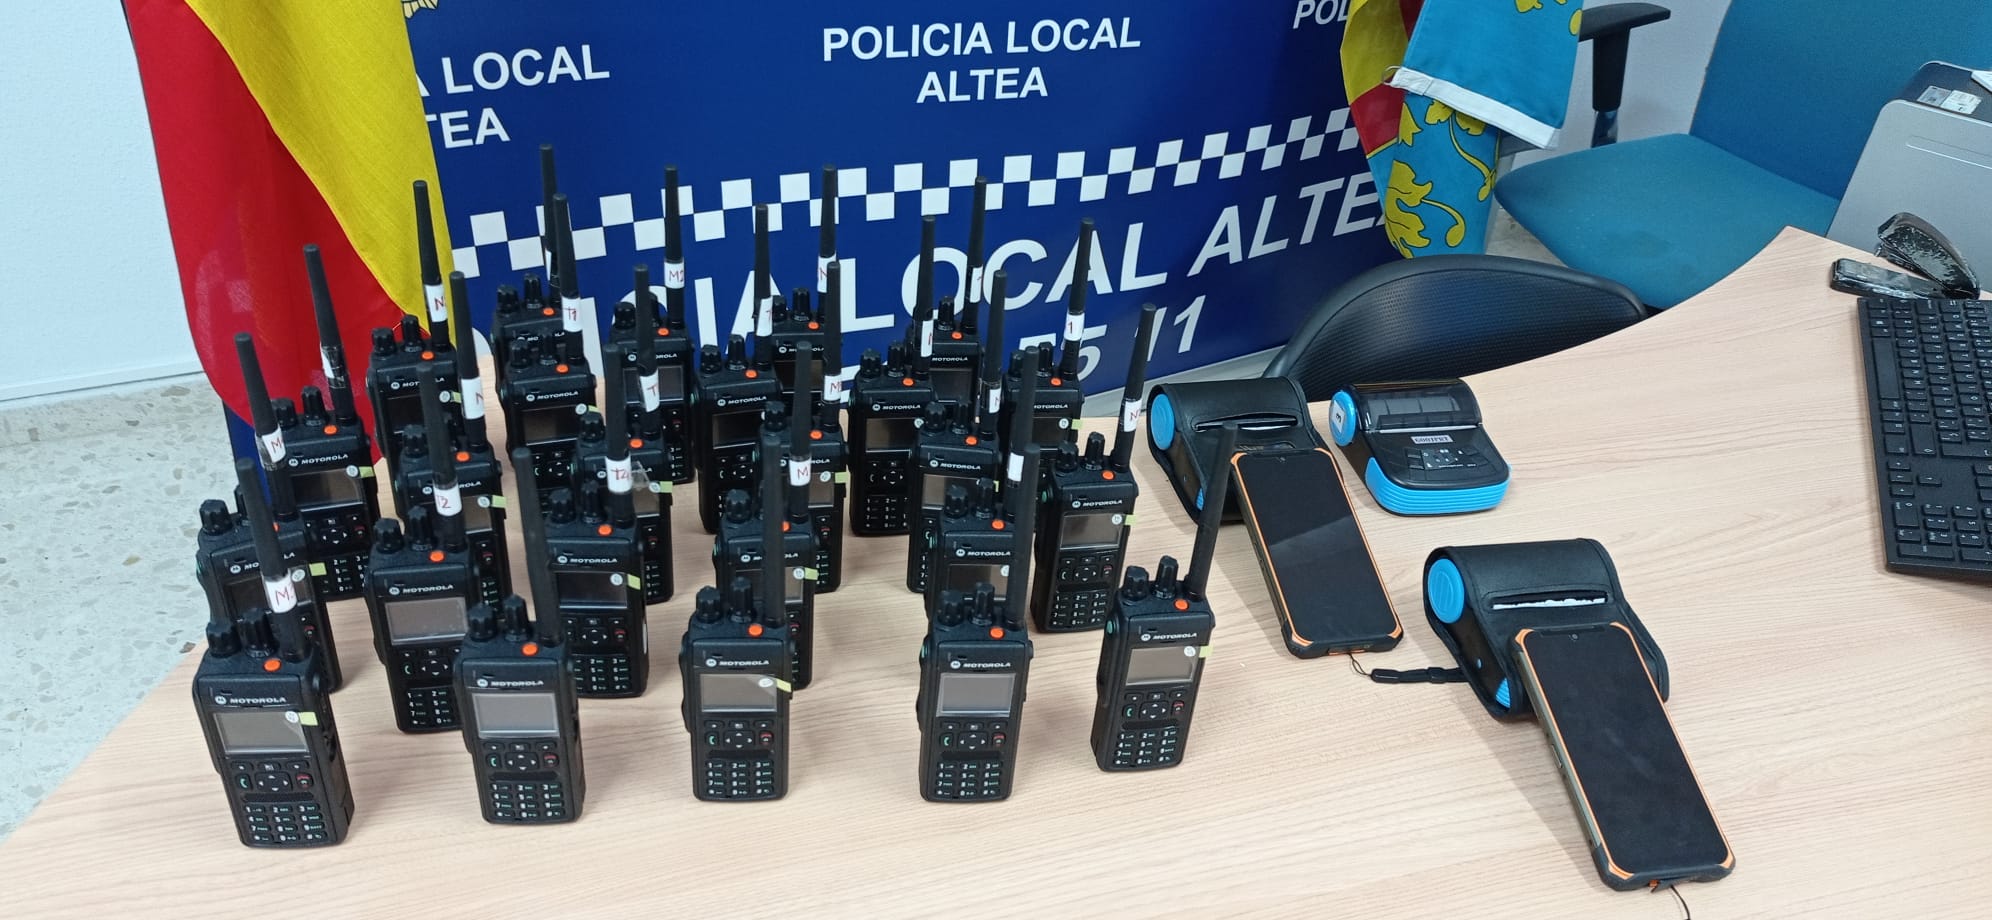 La Concejalía de Seguridad invierte 30.000 euros en mejora de material tecnológico para la Policía Local